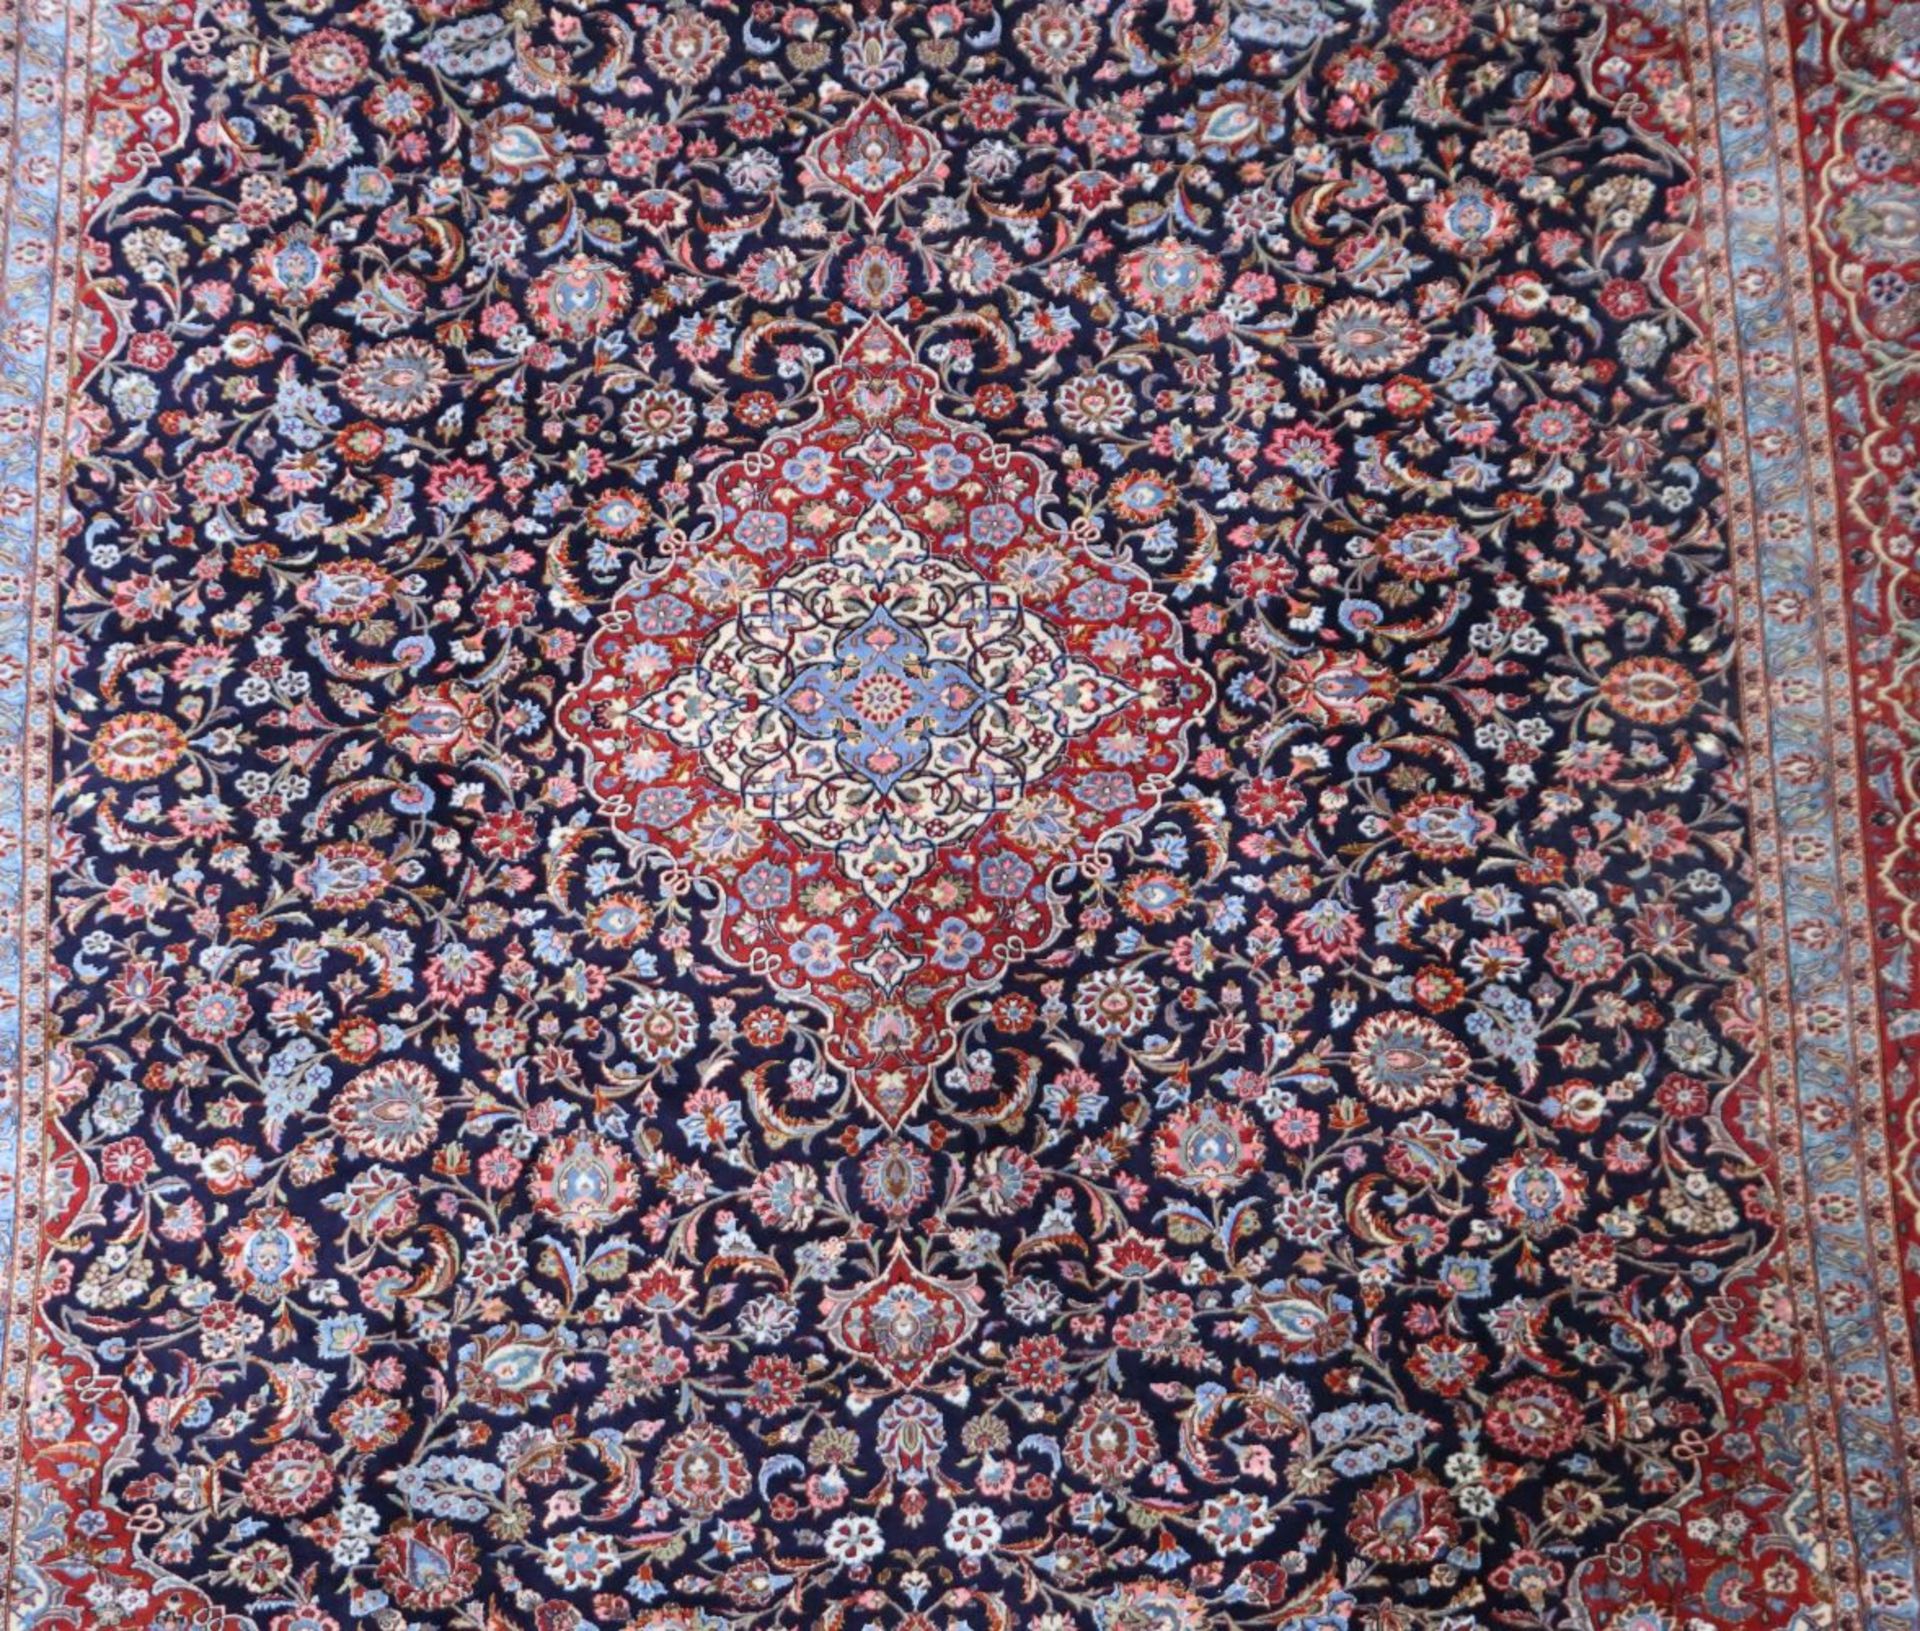 Signierter Medaillonteppich Persien, - Bild 2 aus 3